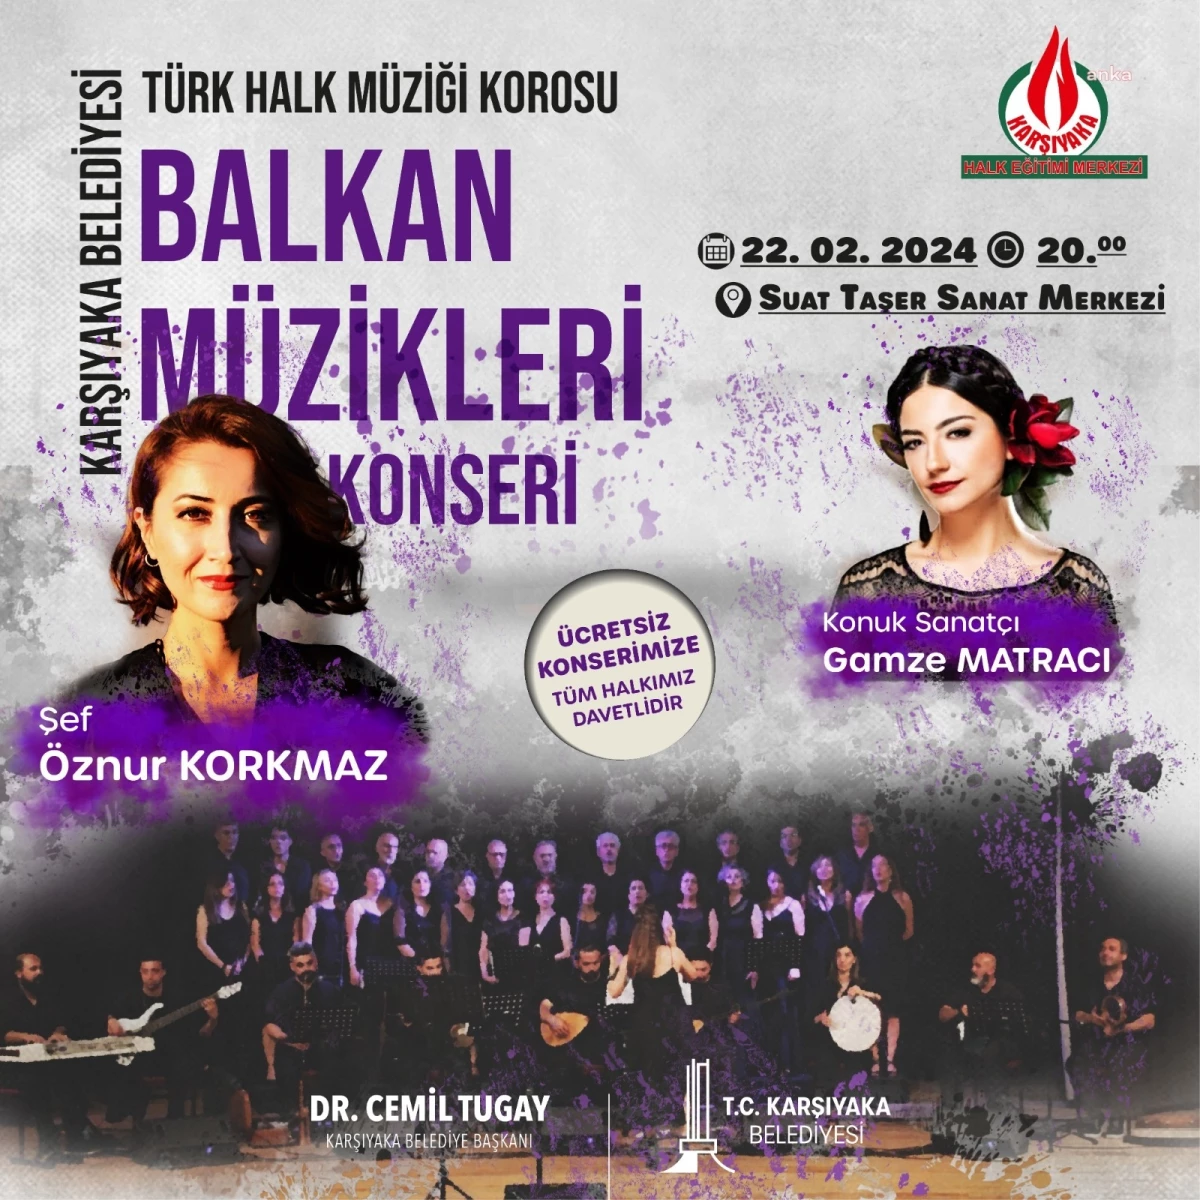 Karşıyaka Belediyesi Türk Halk Müziği Korosu Balkan Müzikleri Konseri